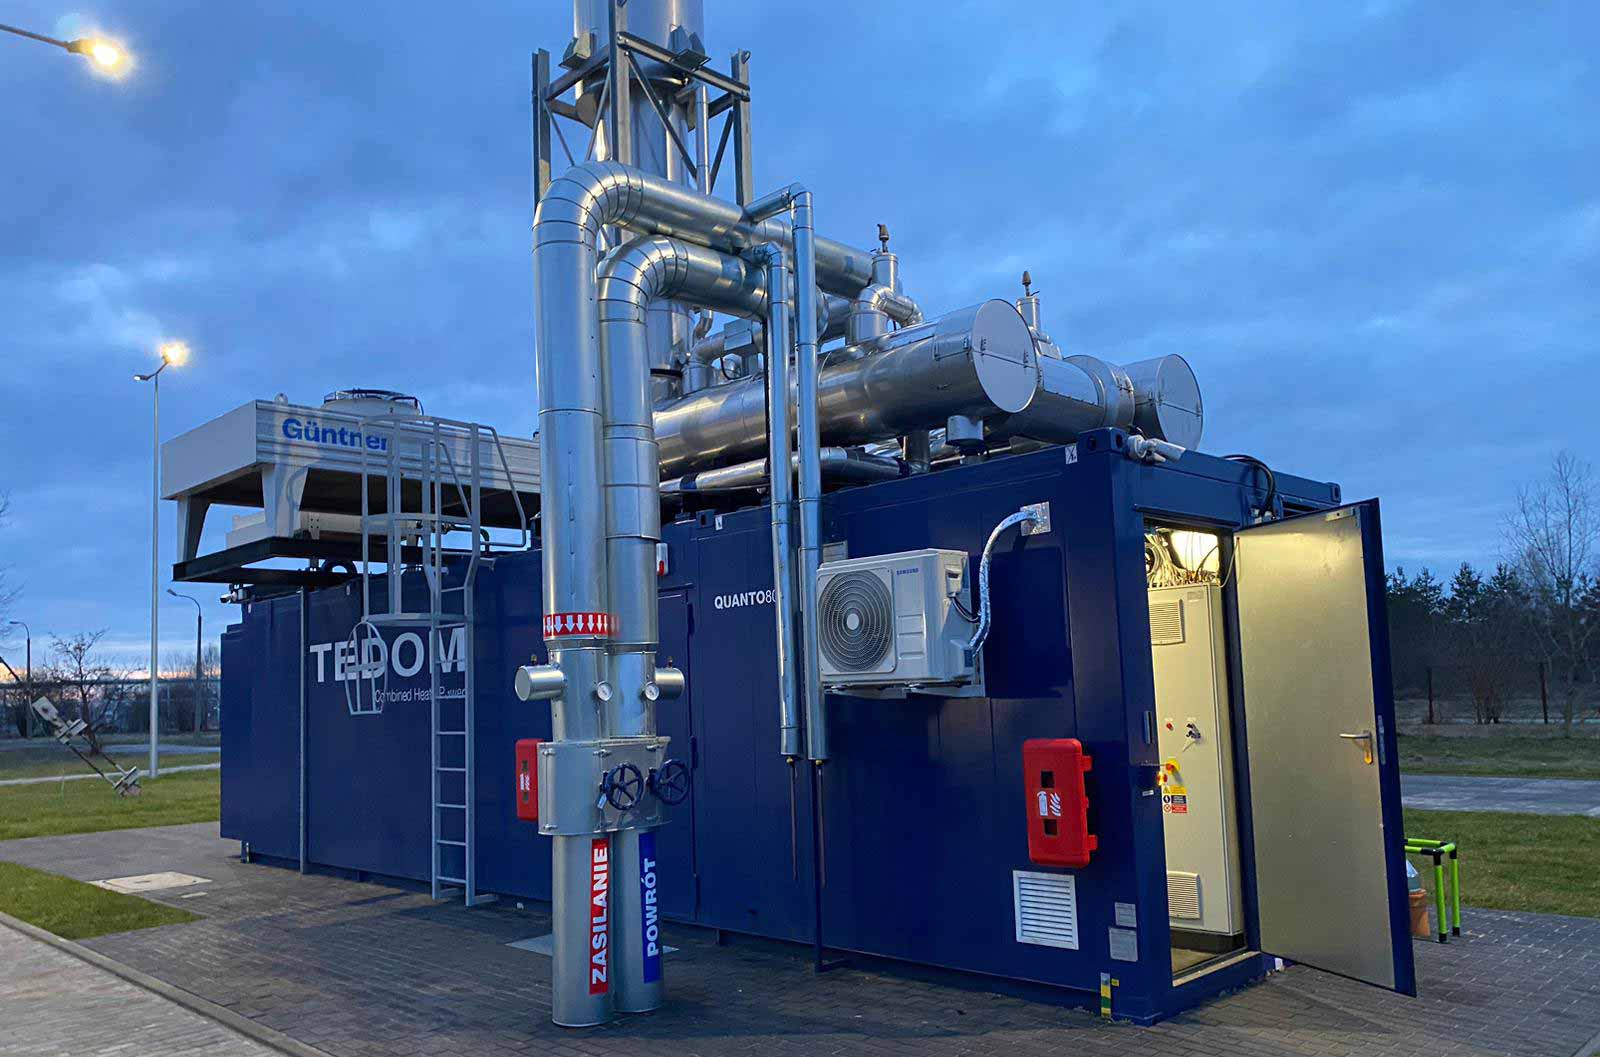 Der neue MWM TCG 3016 V16 Gasmotor, der von TEDOM a.s. als schlüsselfertige Containerlösung installiert und geliefert wurde, erzeugt durch Kraft-Wärme-Kopplung Strom und Wärme für das öffentliche Netz.